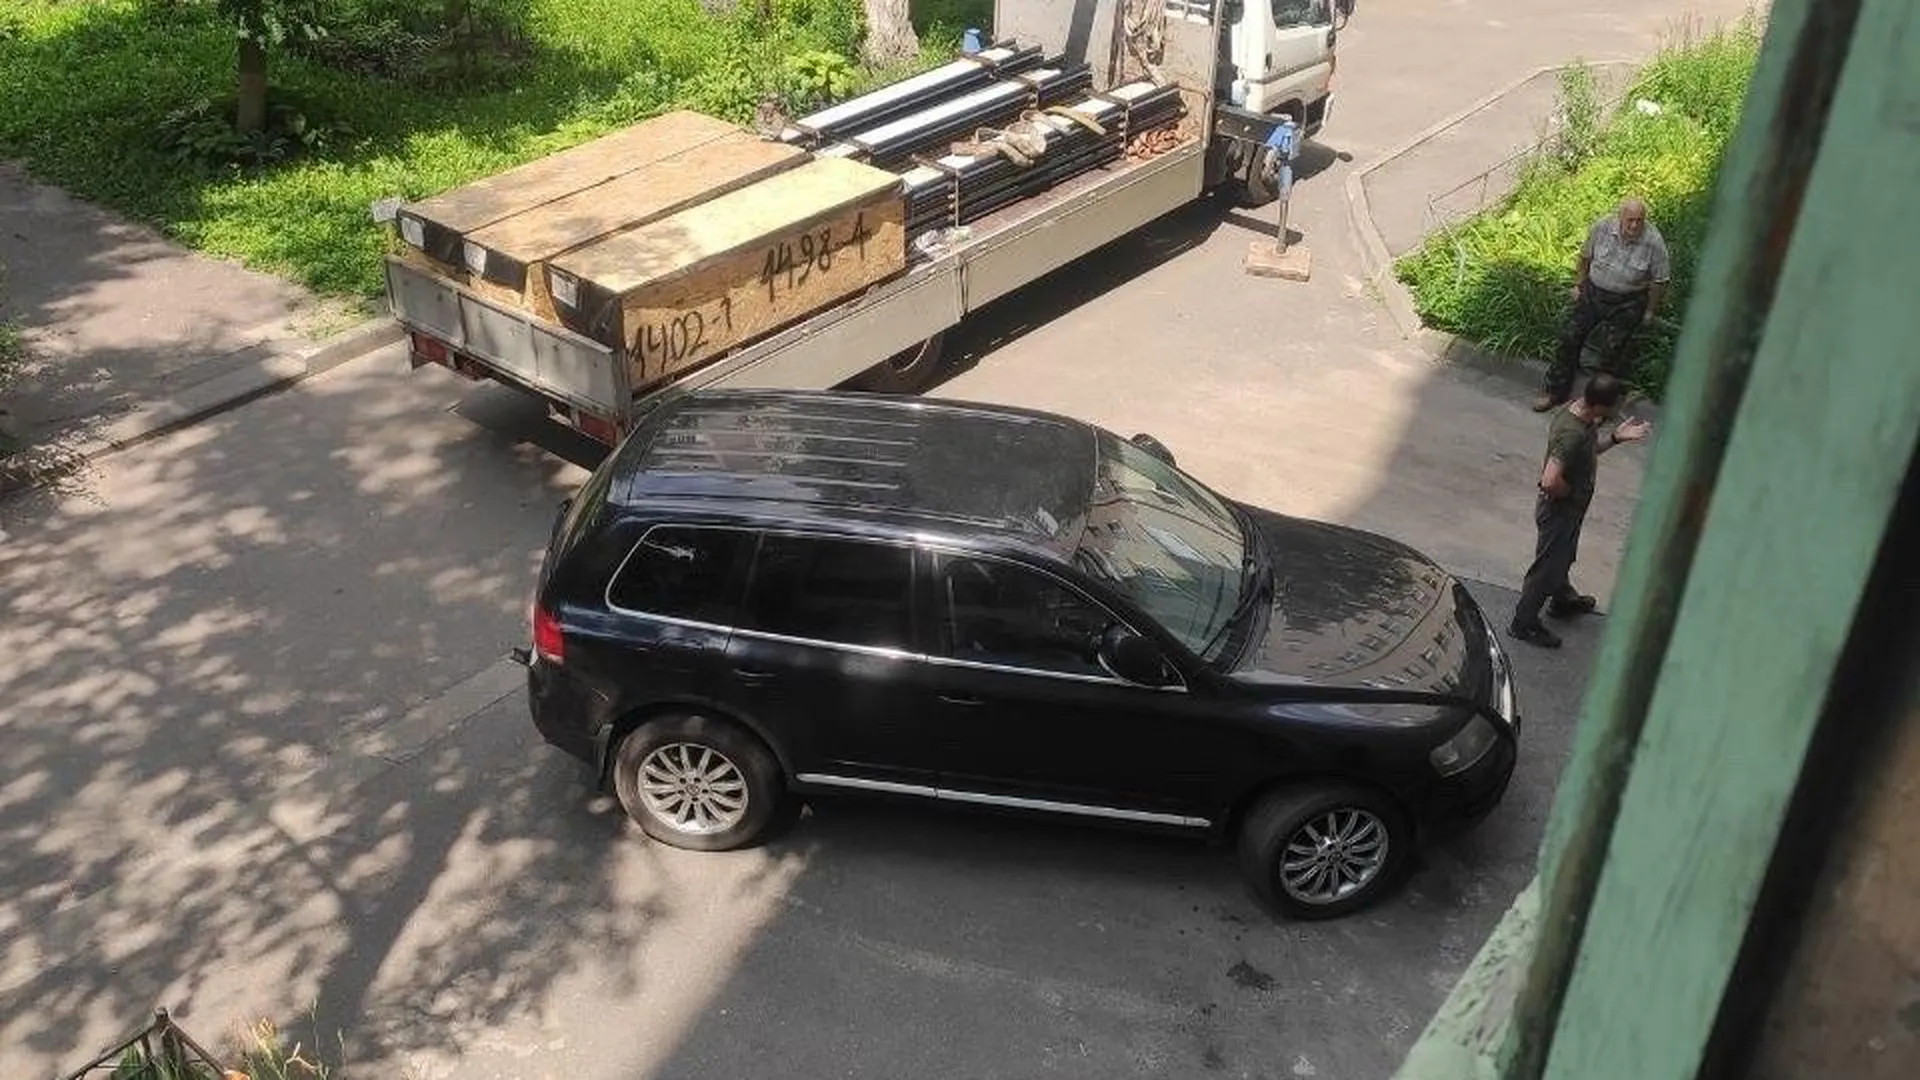 «Вы на меня направили оружие». Появилось видео из Воронежа, где женщина с арбалетом заблокировала вход в подъезд